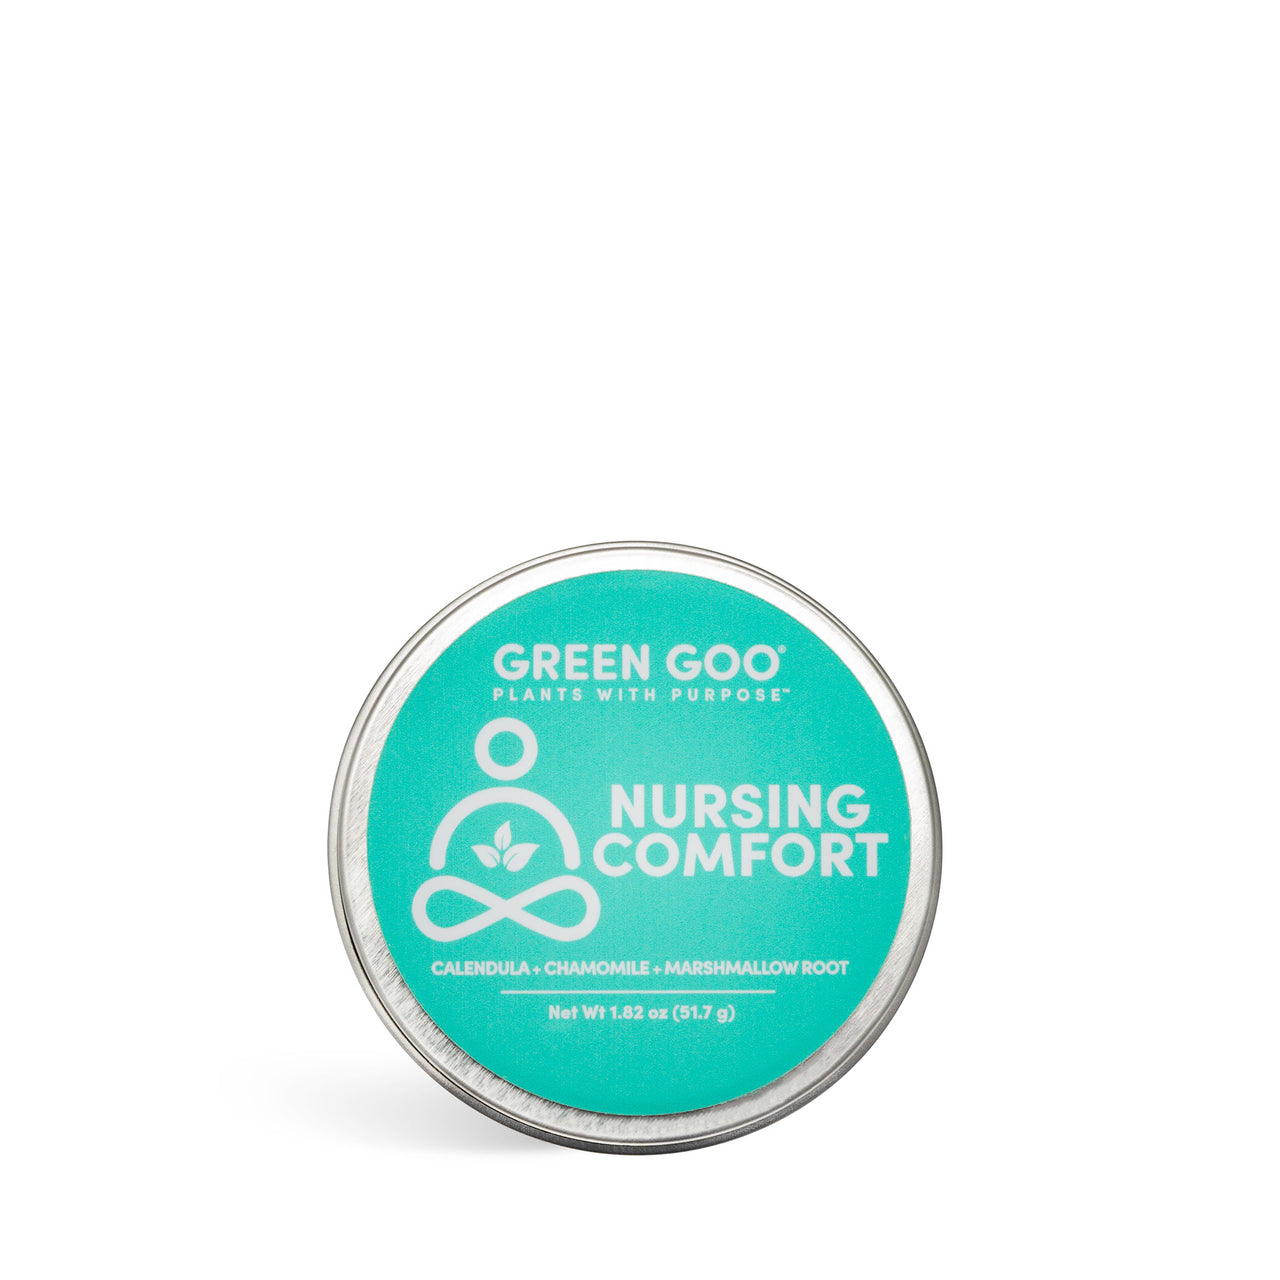 Nursing Comfort | Green Goo by Sierra Sage Herbs